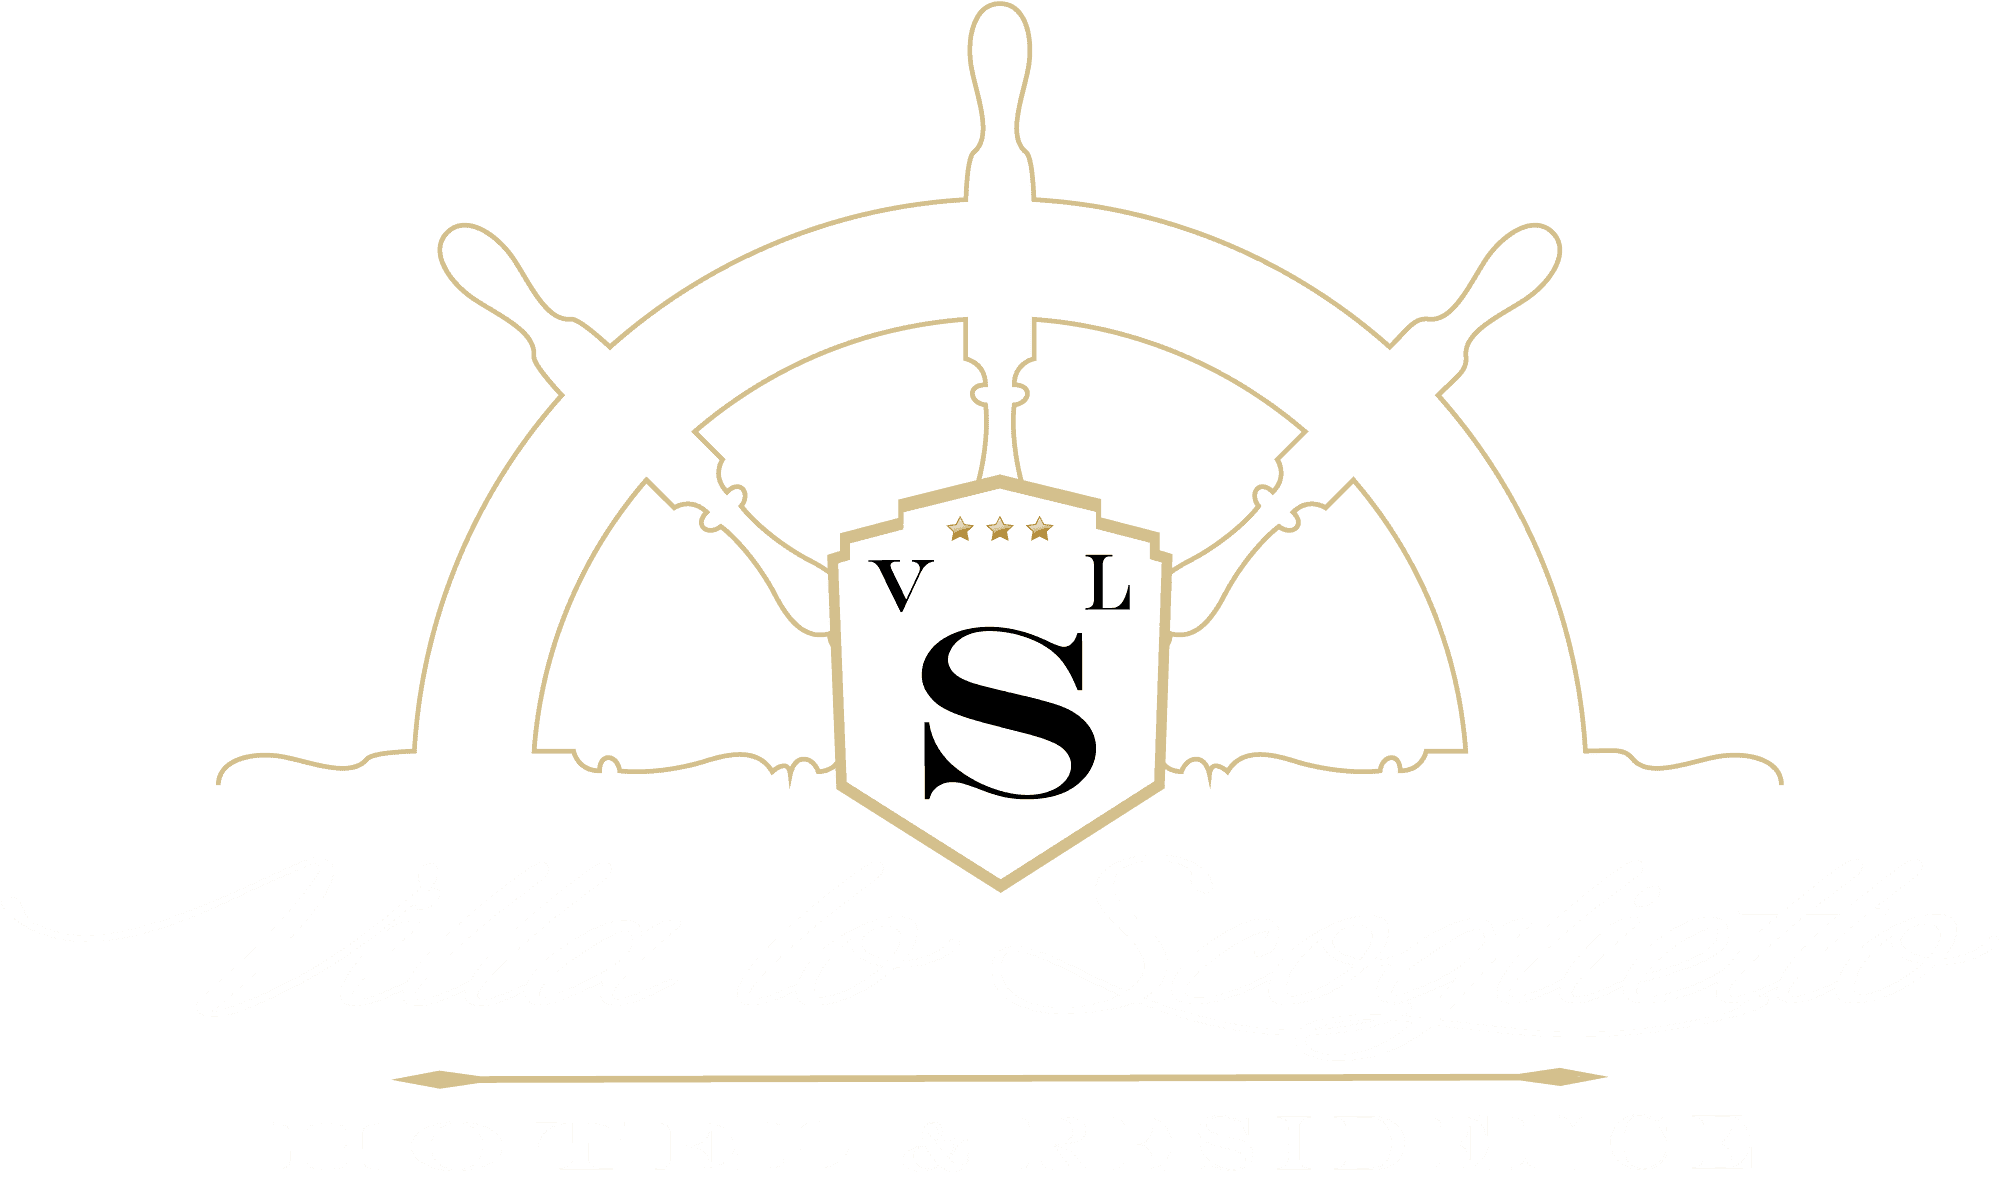 Residence Villa lo Scoglietto